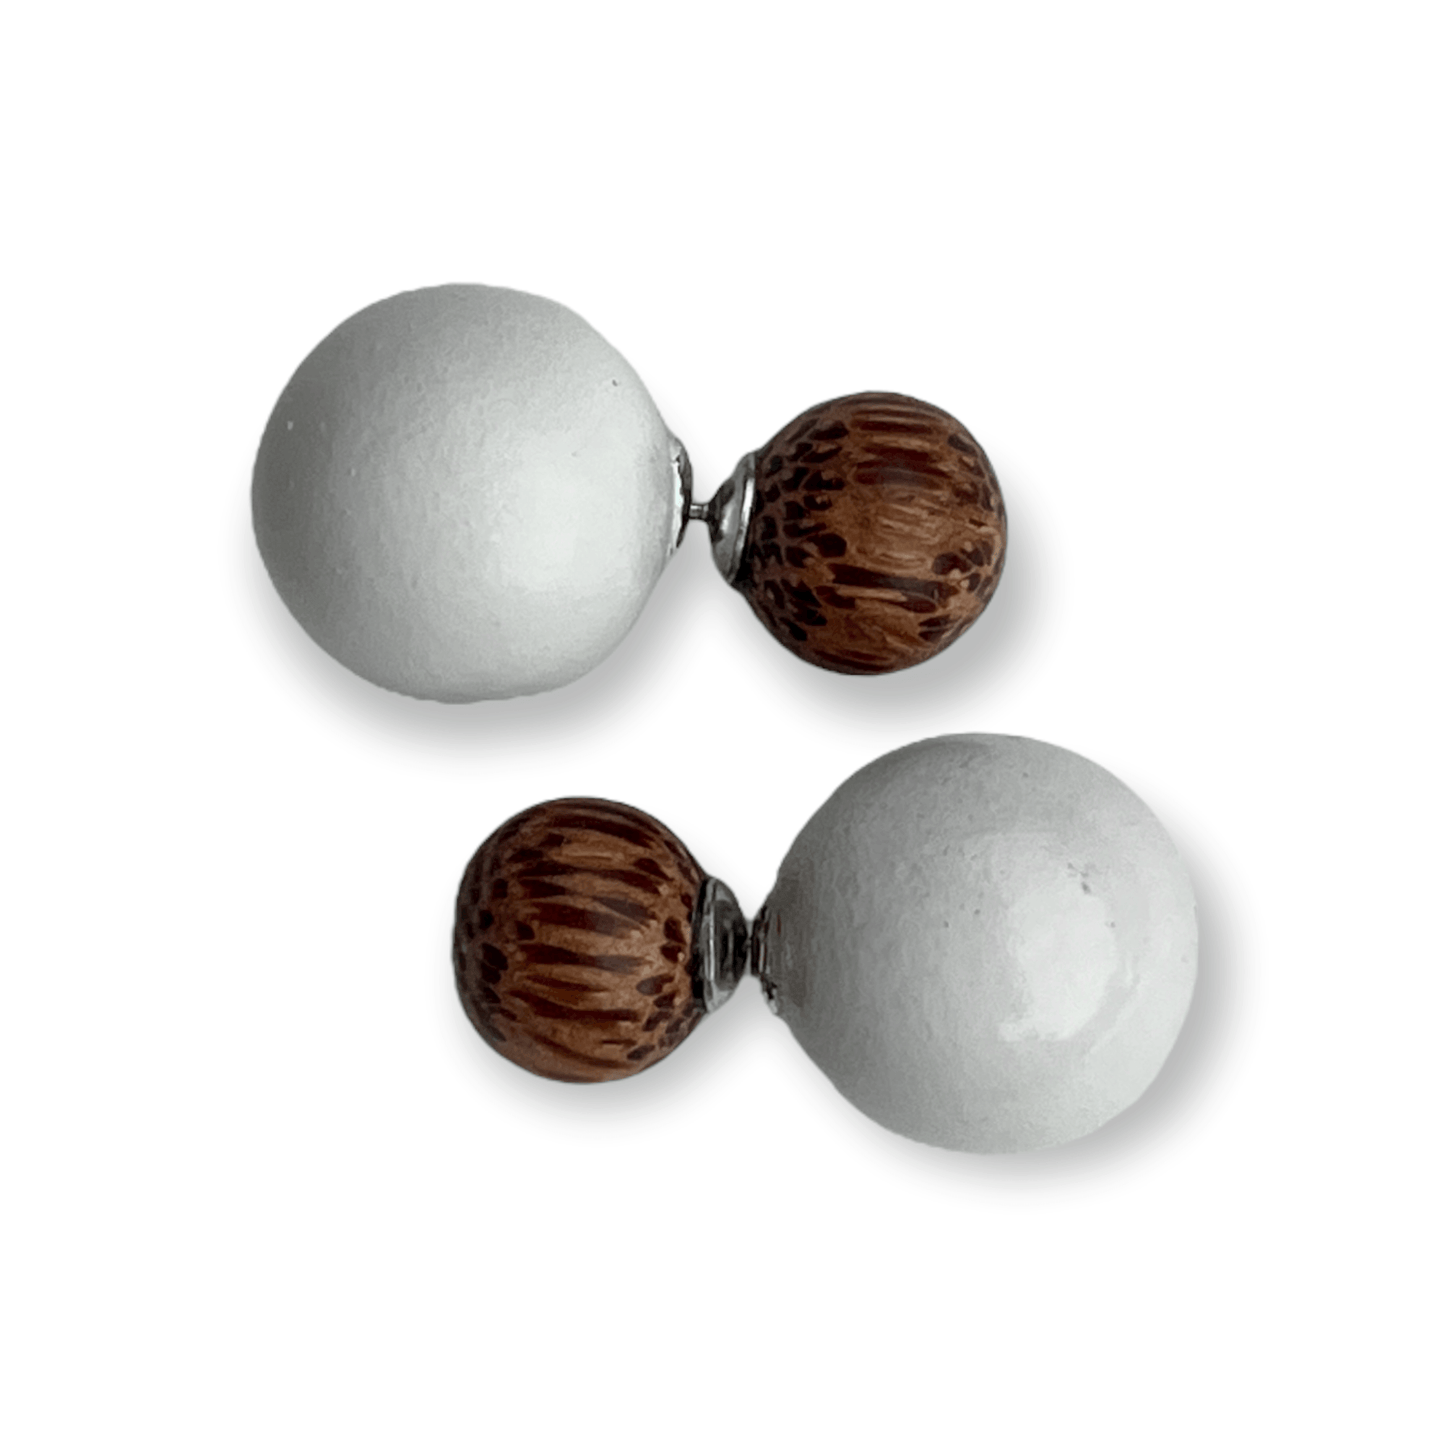 Two sided stud earrings in wood for a modern feel - Sundara Joon